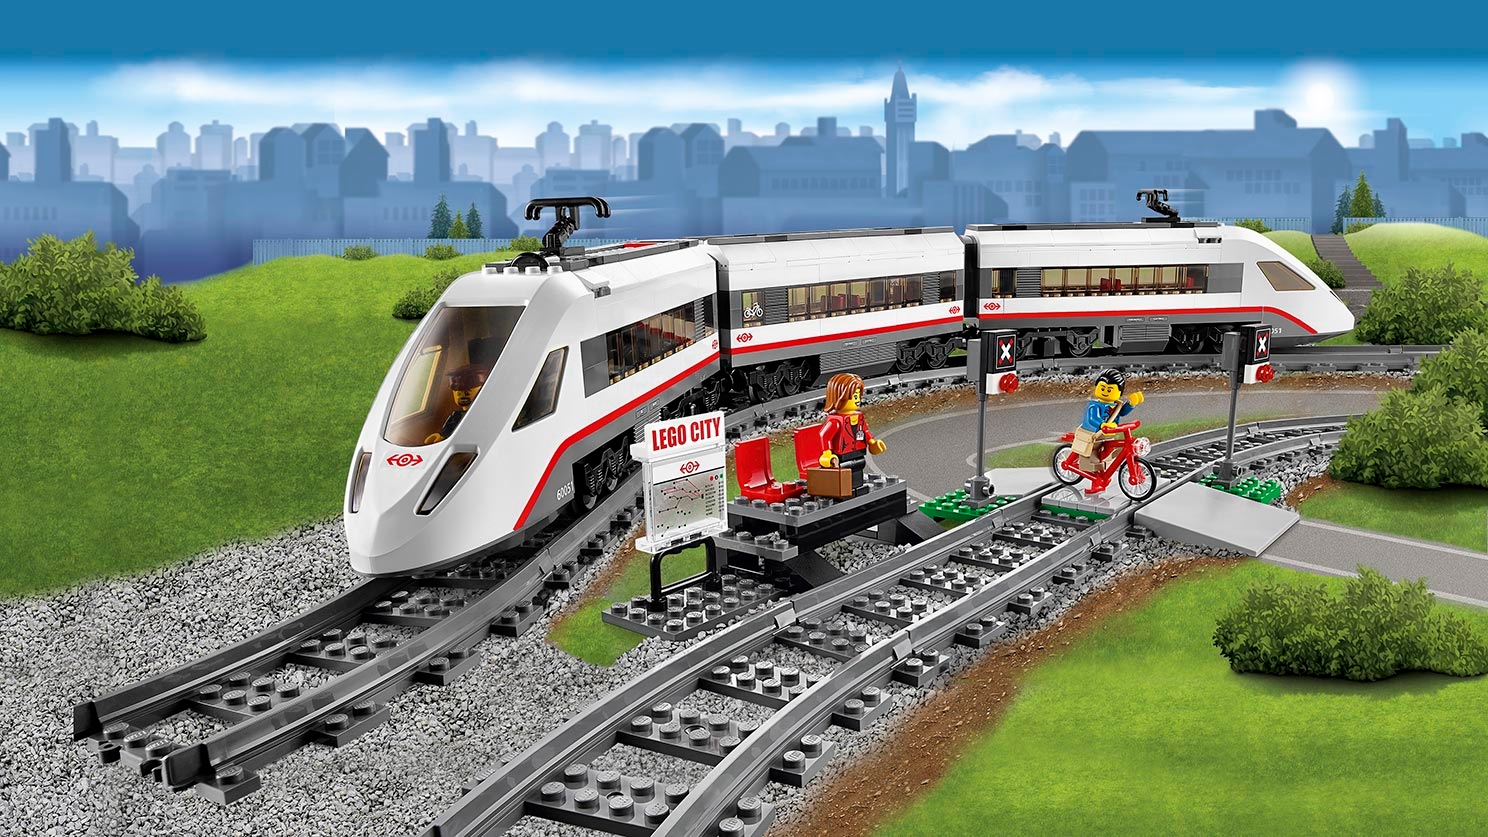 High-speed Passenger Train 60051 - LEGO® City Sets - LEGO.com for kids